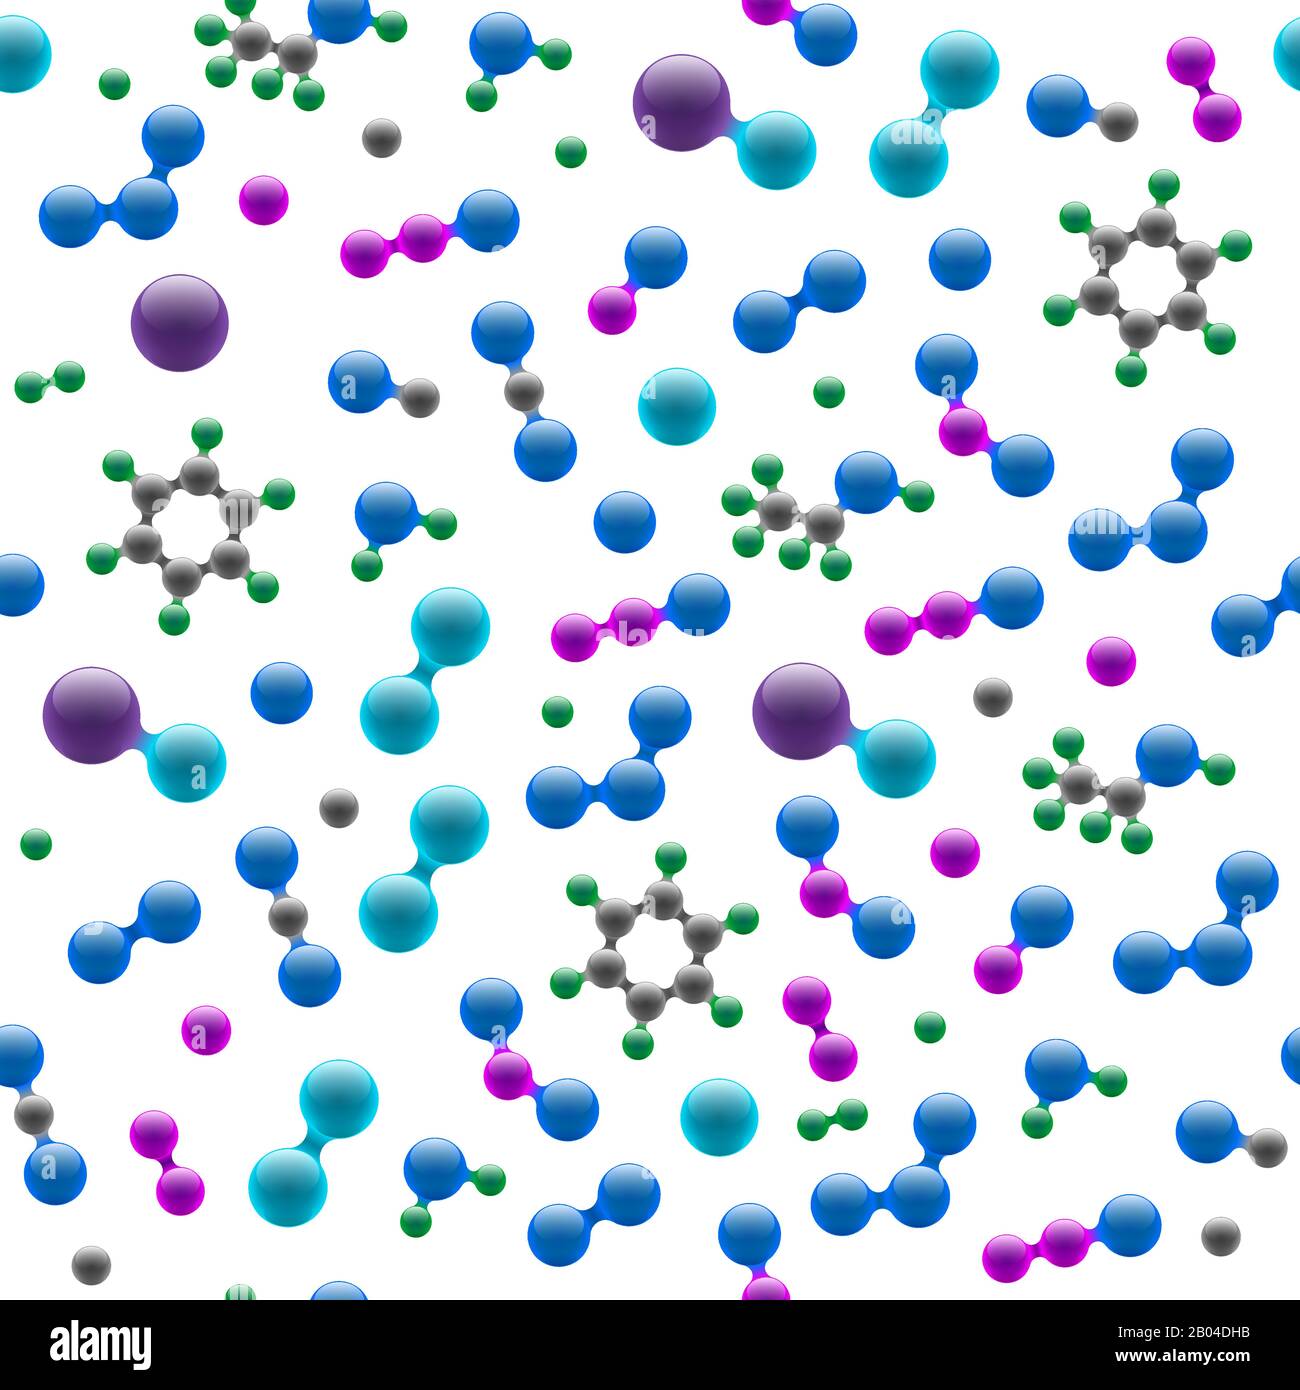 Chemie atomare molekulare 3d Struktur nahtloses Muster. Abstraktes Designkonzept für Wissenschaft Biotechnologie chemische Industrie. Vektor-Atome und Moleküle Textur Hintergrunddarstellung Stock Vektor